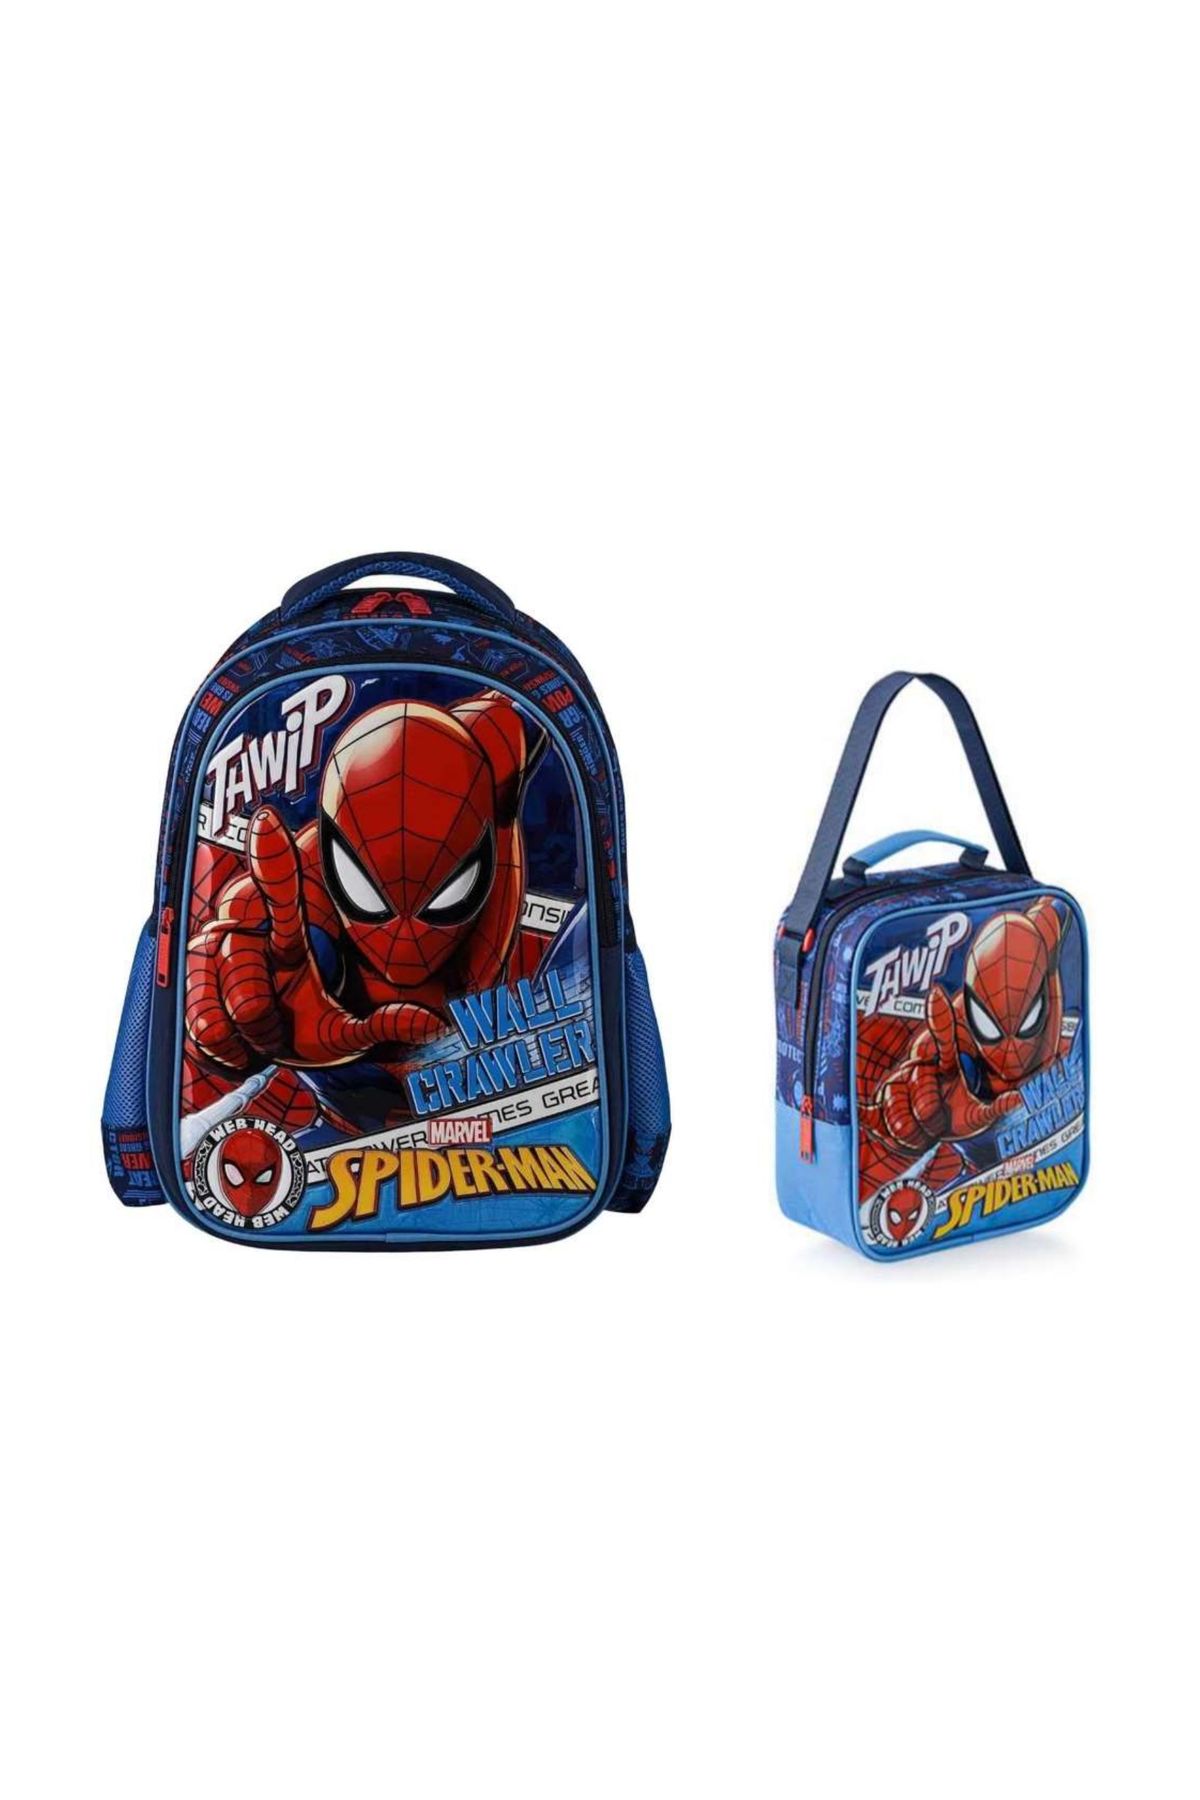 Spiderman Lisanslı İlkokul Çanta ve Beslenme Çantası Seti 2li Wall Crawler